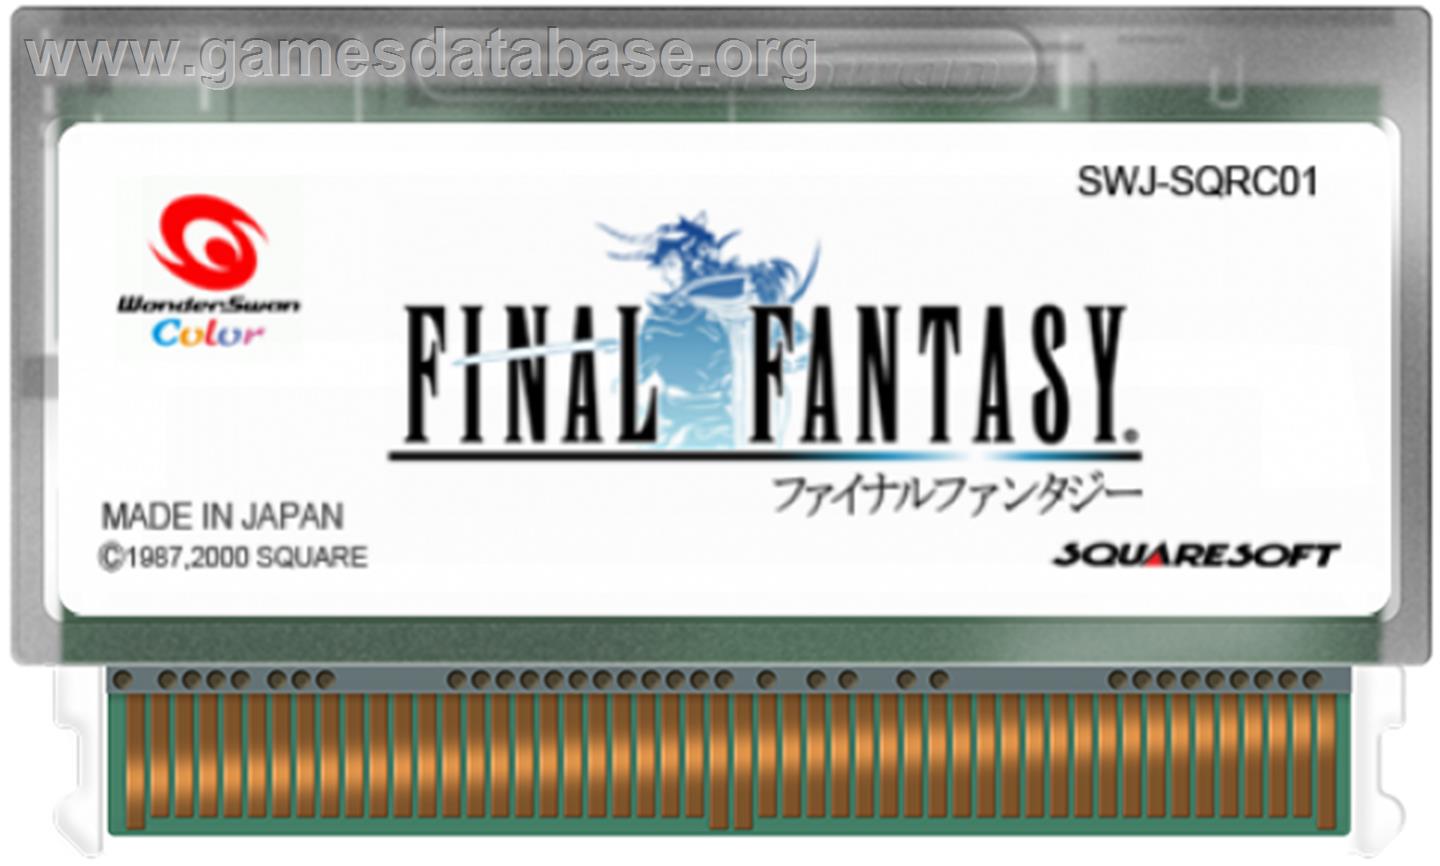 Final Fantasy - Bandai WonderSwan Color - Artwork - Cartridge